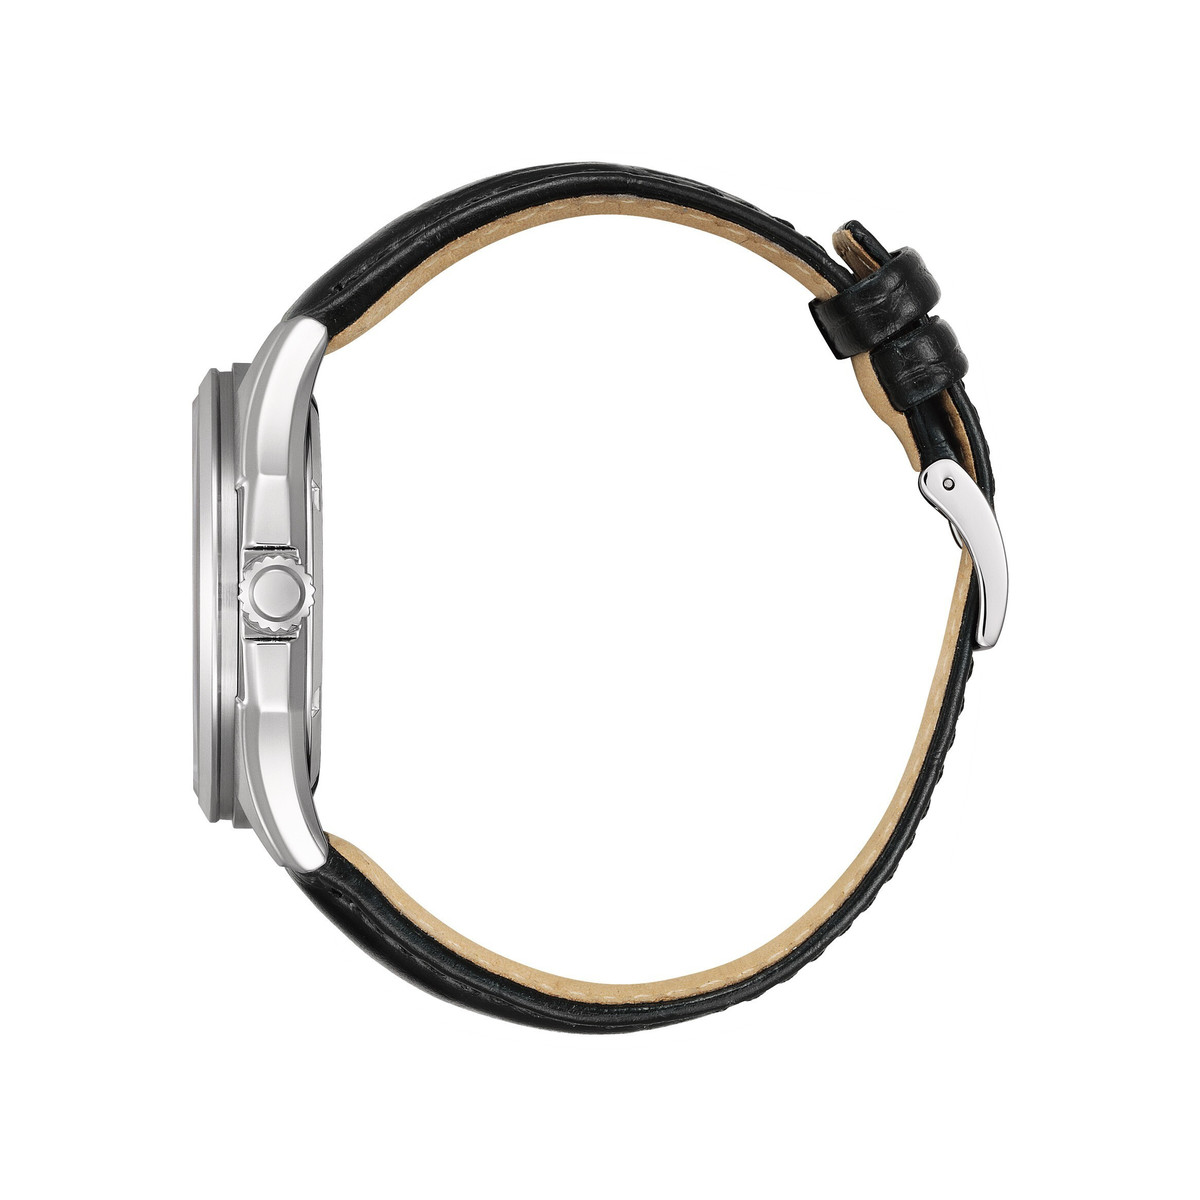 Montre CITIZEN platform classic homme eco-drive acier bracelet cuir noir - vue 2